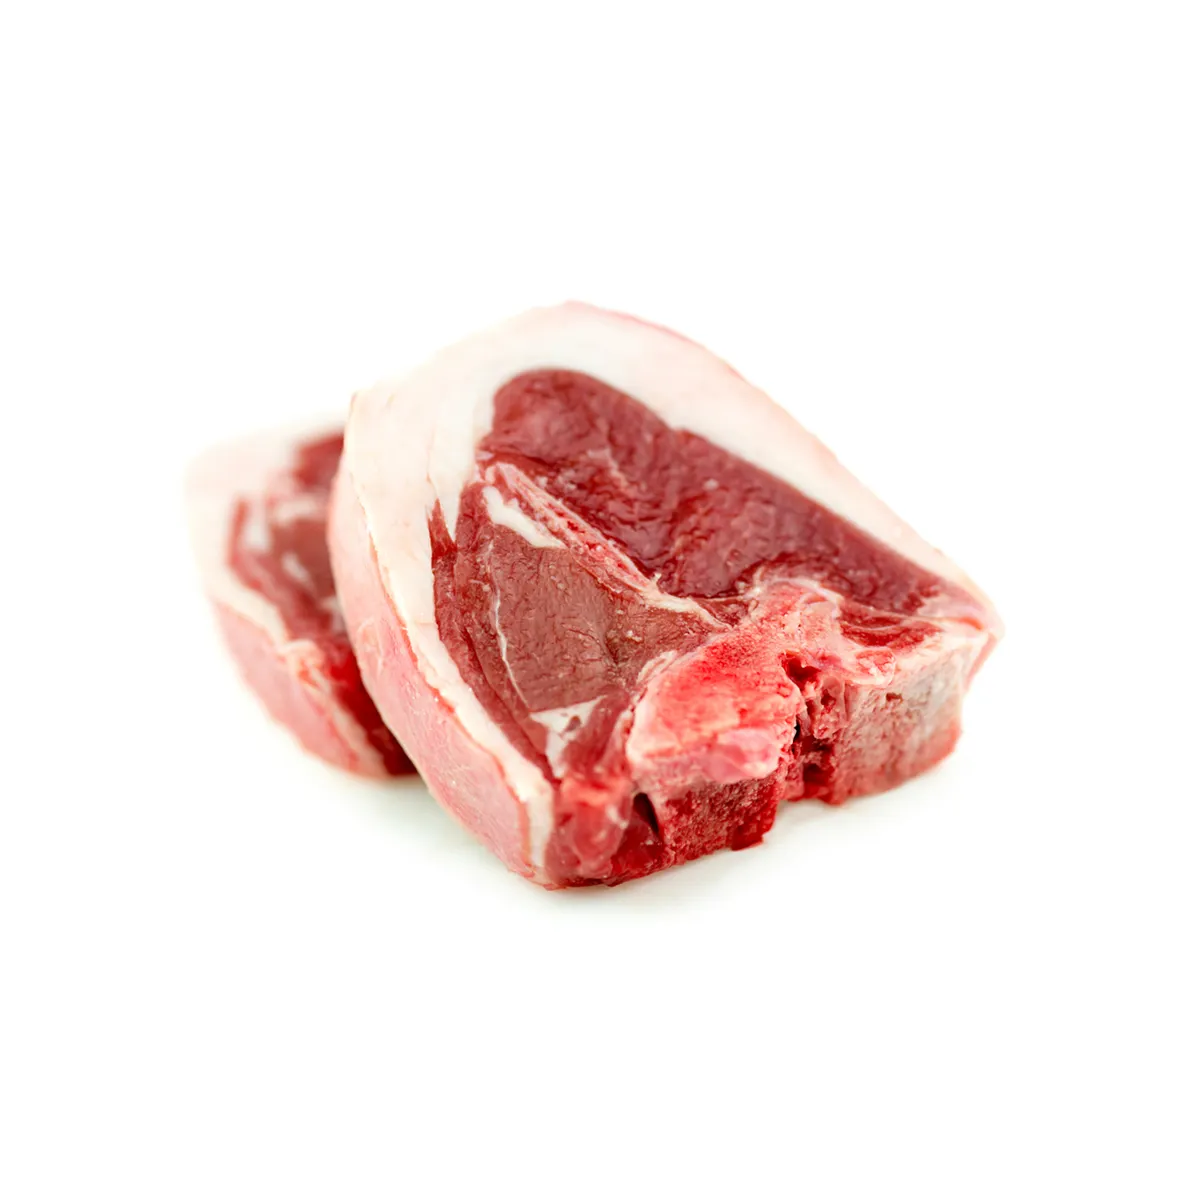 बिक्री के लिए उच्च गुणवत्ता वाले शीर्ष ग्रेड जमे हुए भेड़ का मांस हलाल